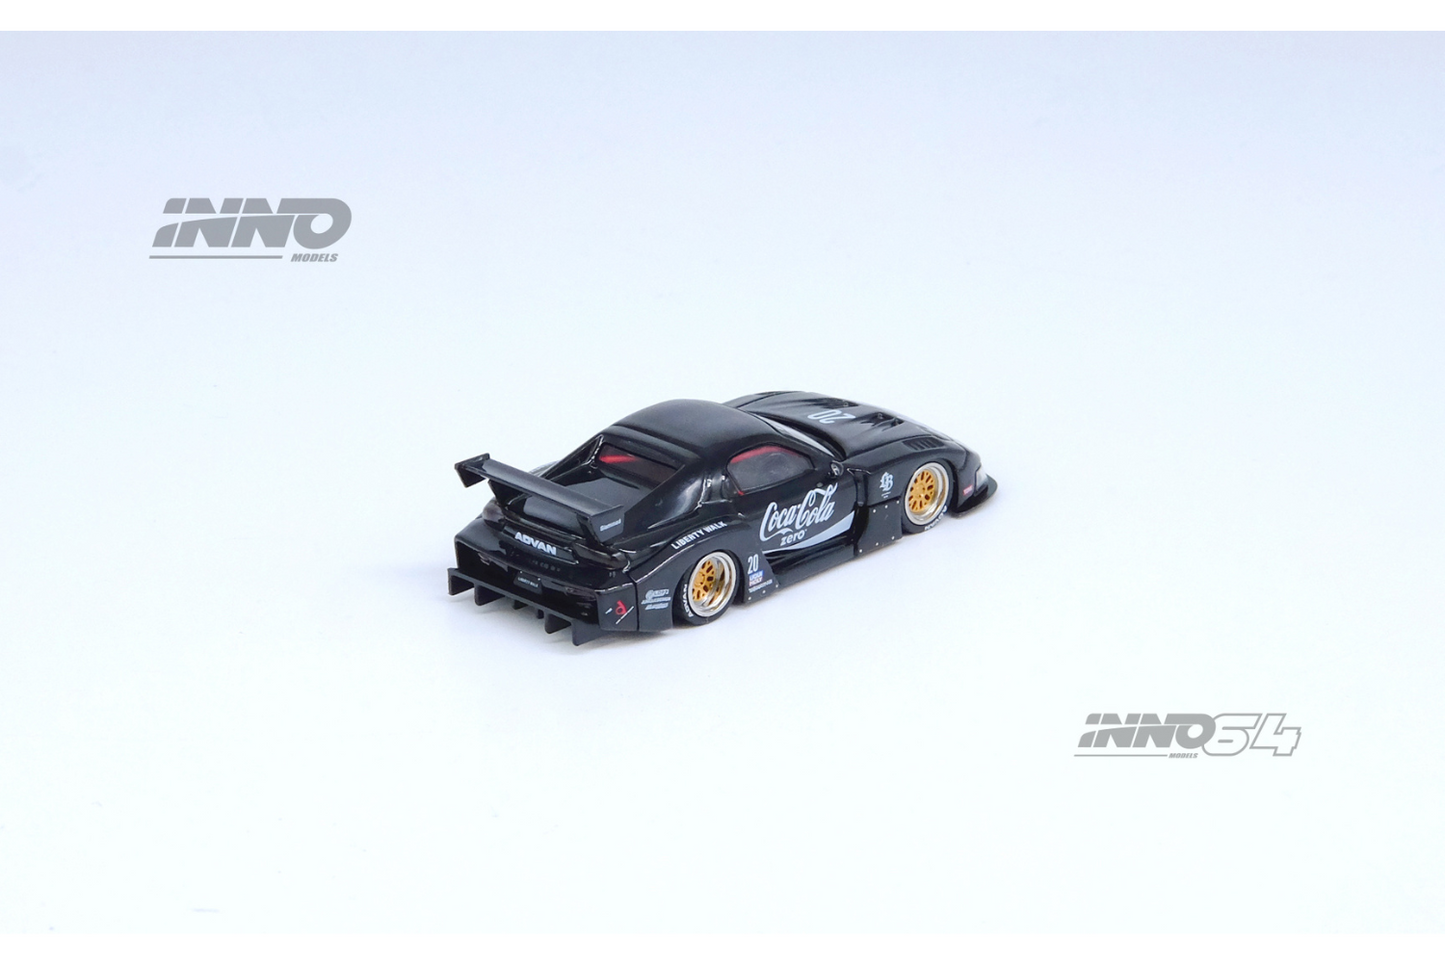 Inno64 Nissan Mazda RX-7 (FD3S) LB-Super Silhouette in Black